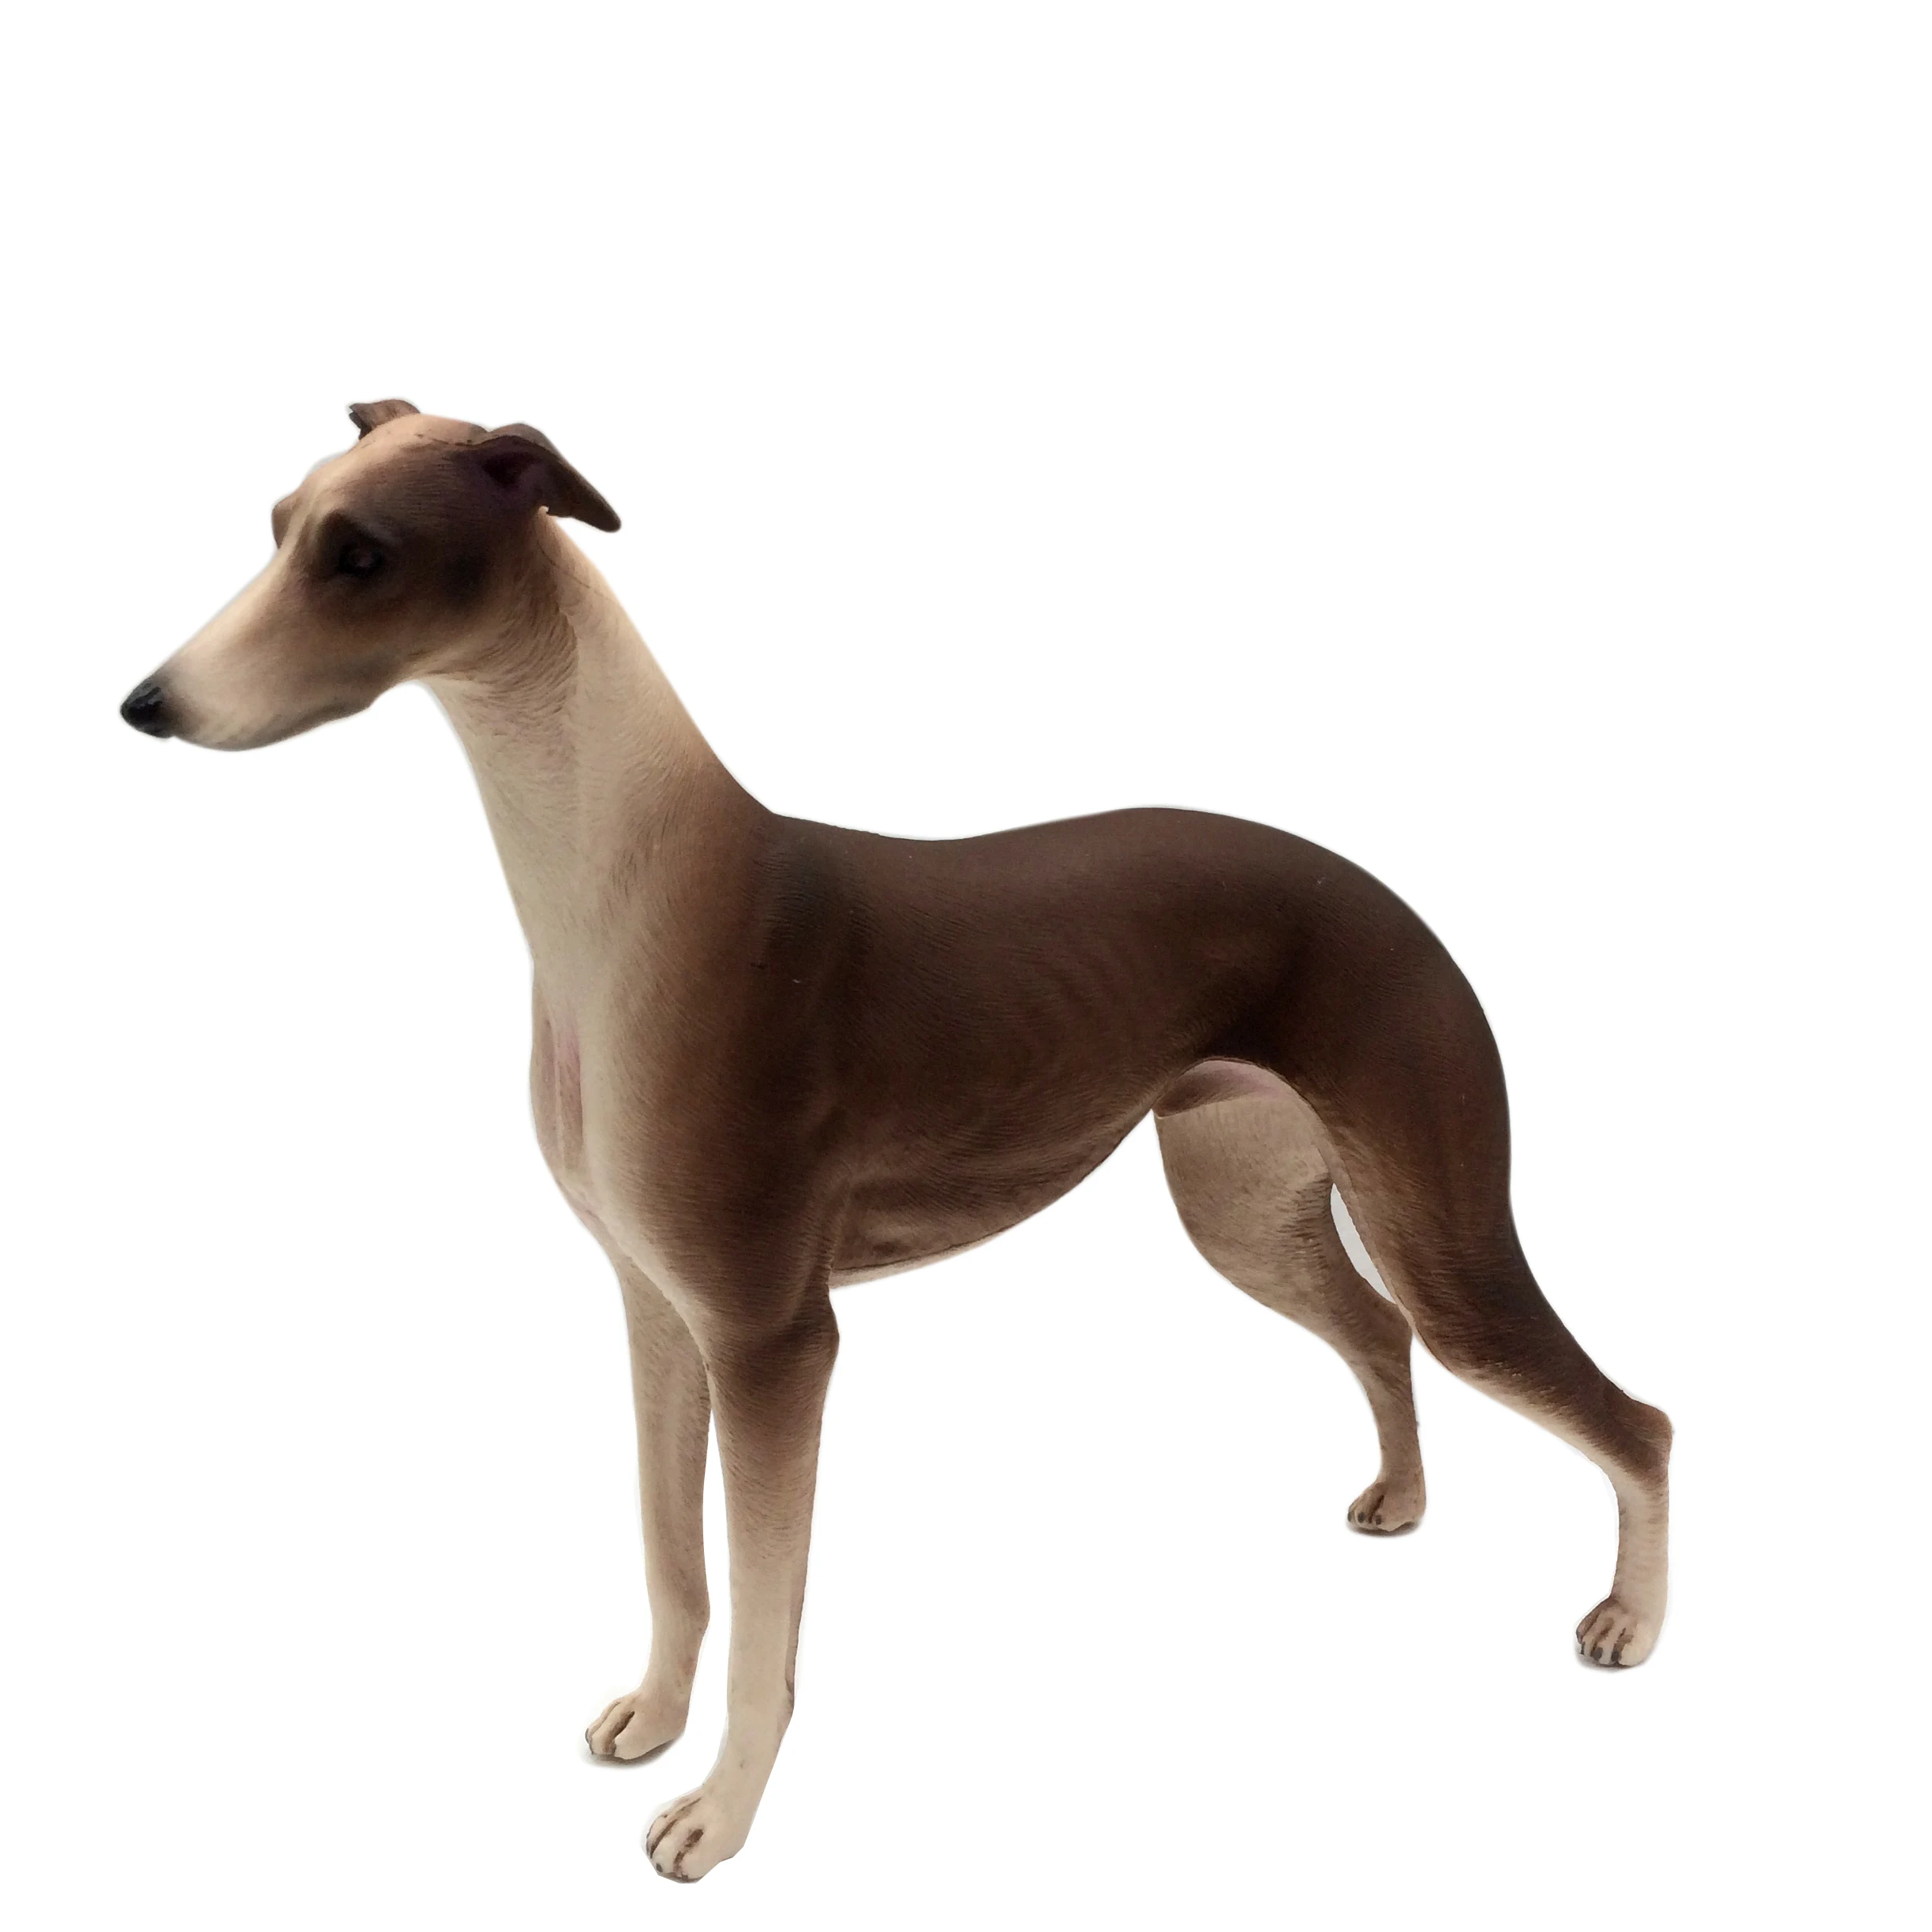 Миниатюрная собачка в масштабе 1/6 для Модной Королевской куклы Поппи Паркер Джем и сцены с голограммами